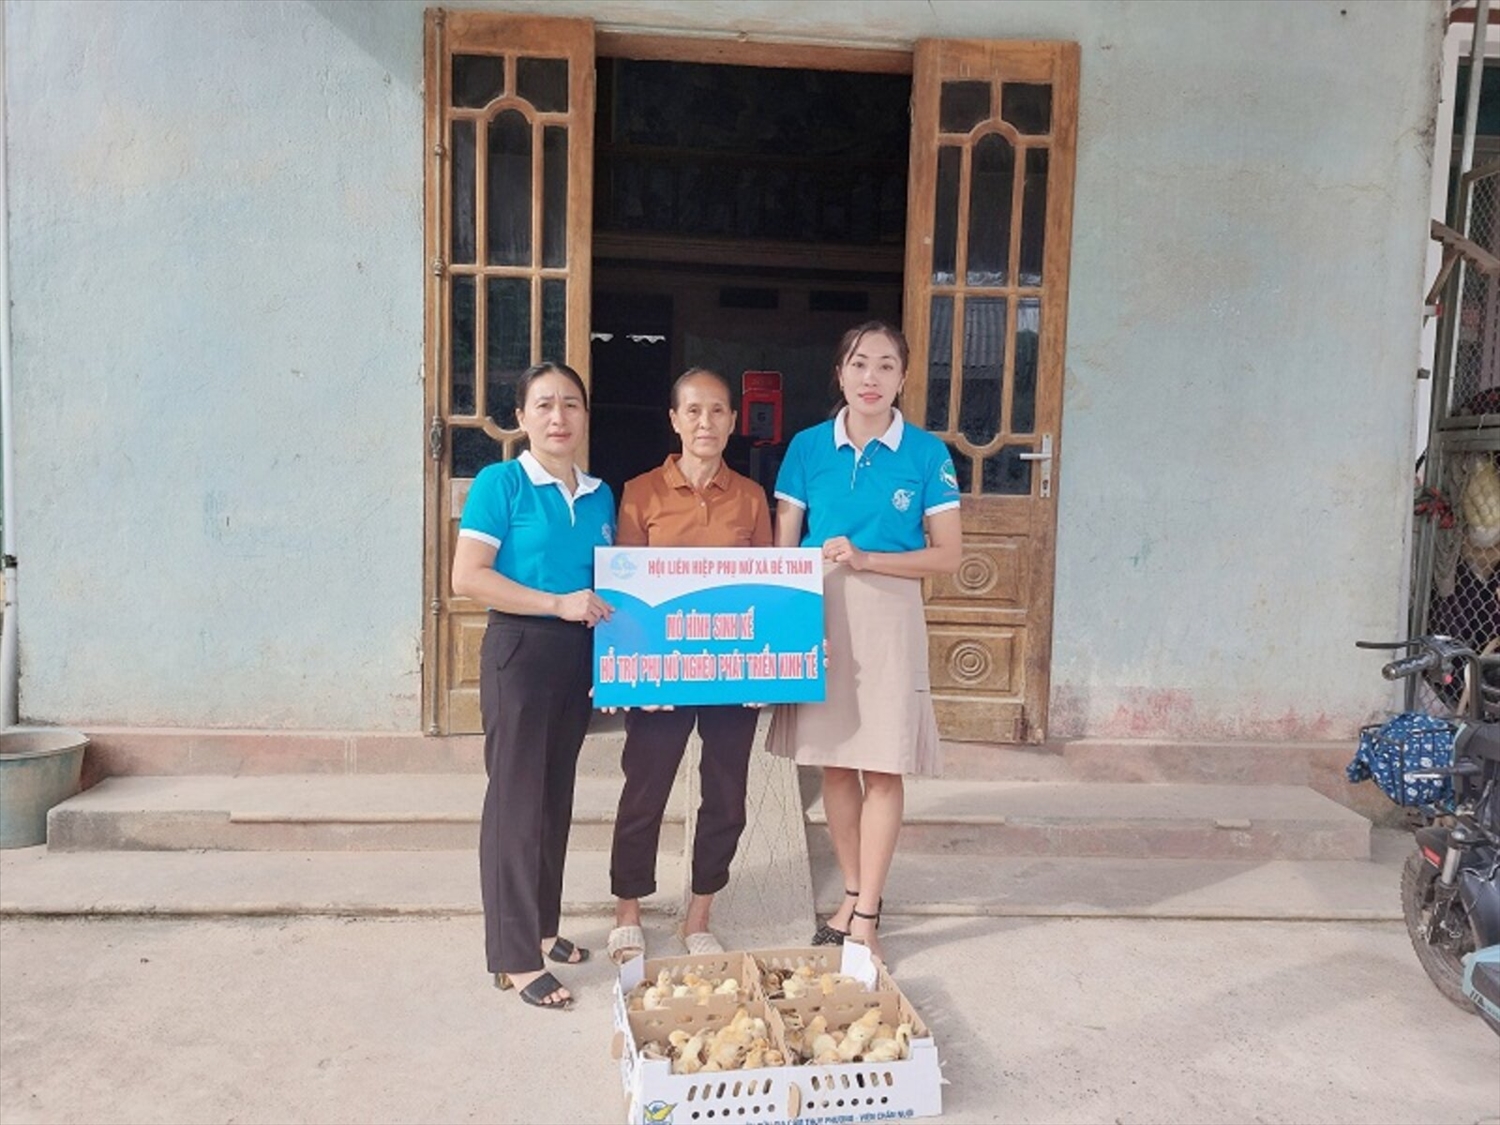  Hội phụ nữ xã Đề Thám (huyện Tràng Định) trao mô hình sinh kế hỗ trợ phụ nữ nghèo phát triển kinh tế